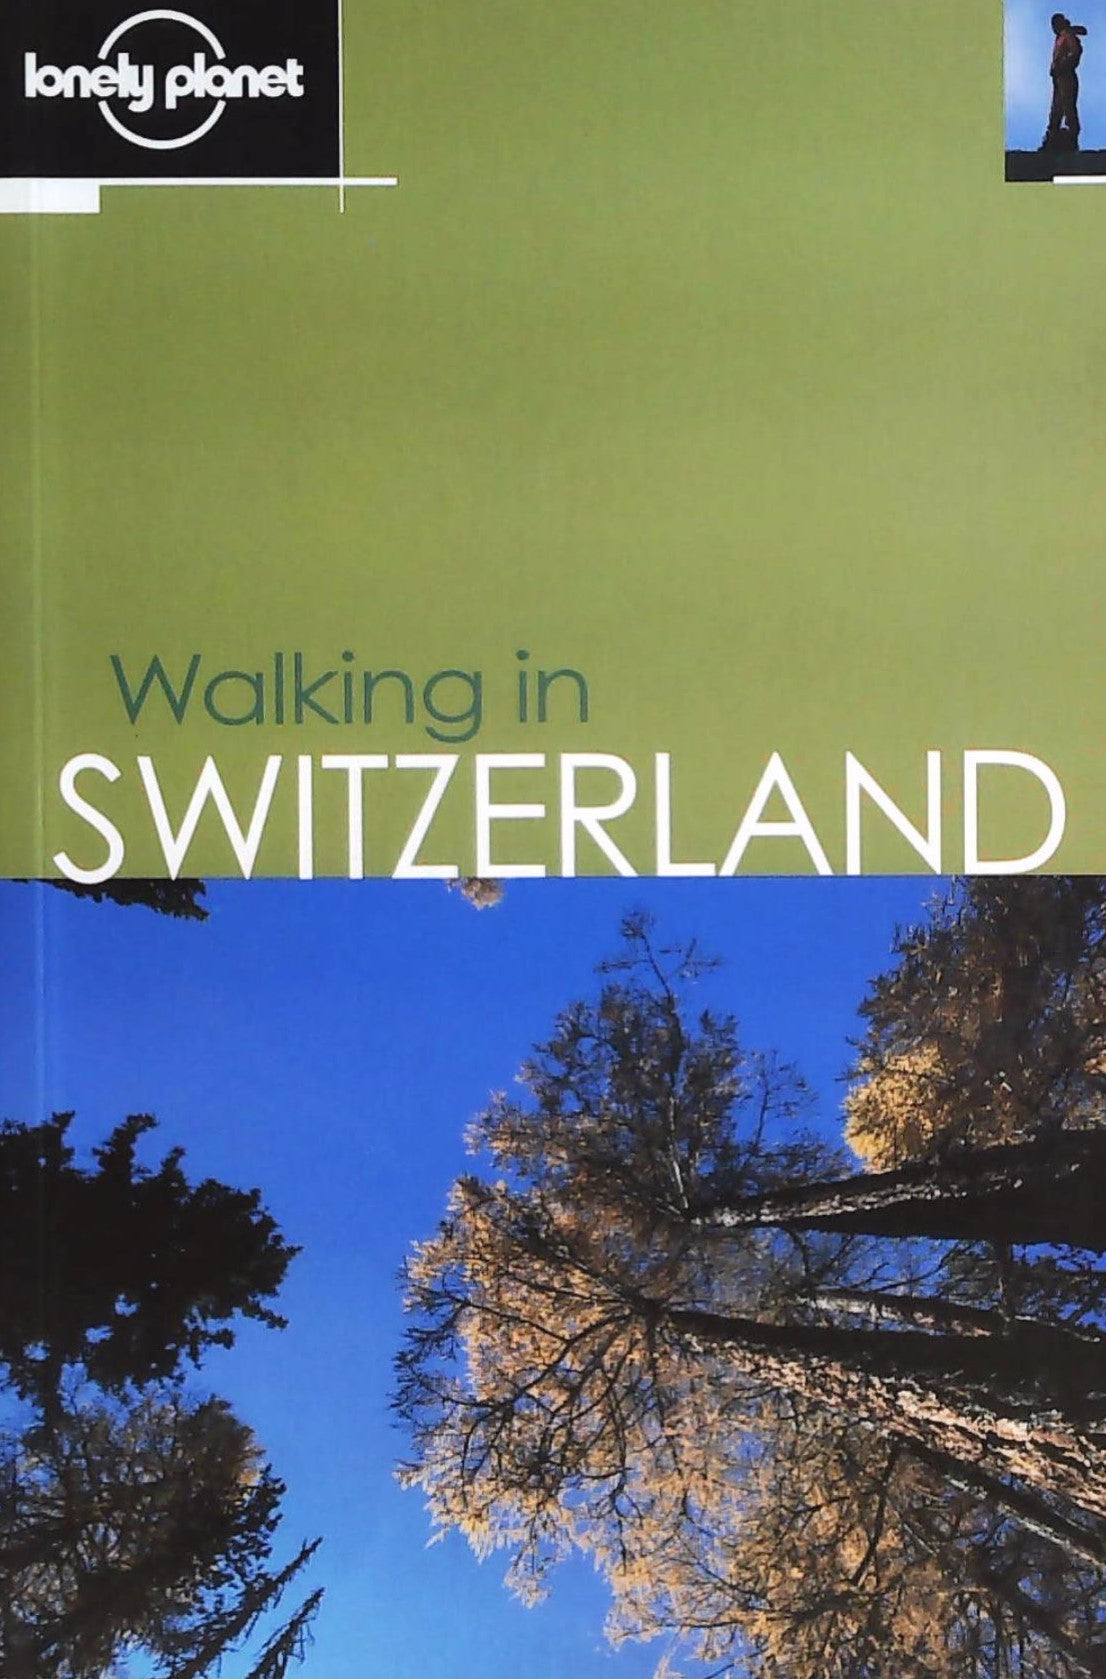 Livre ISBN 0864427379 Lonely planet : Walking in Switzerland